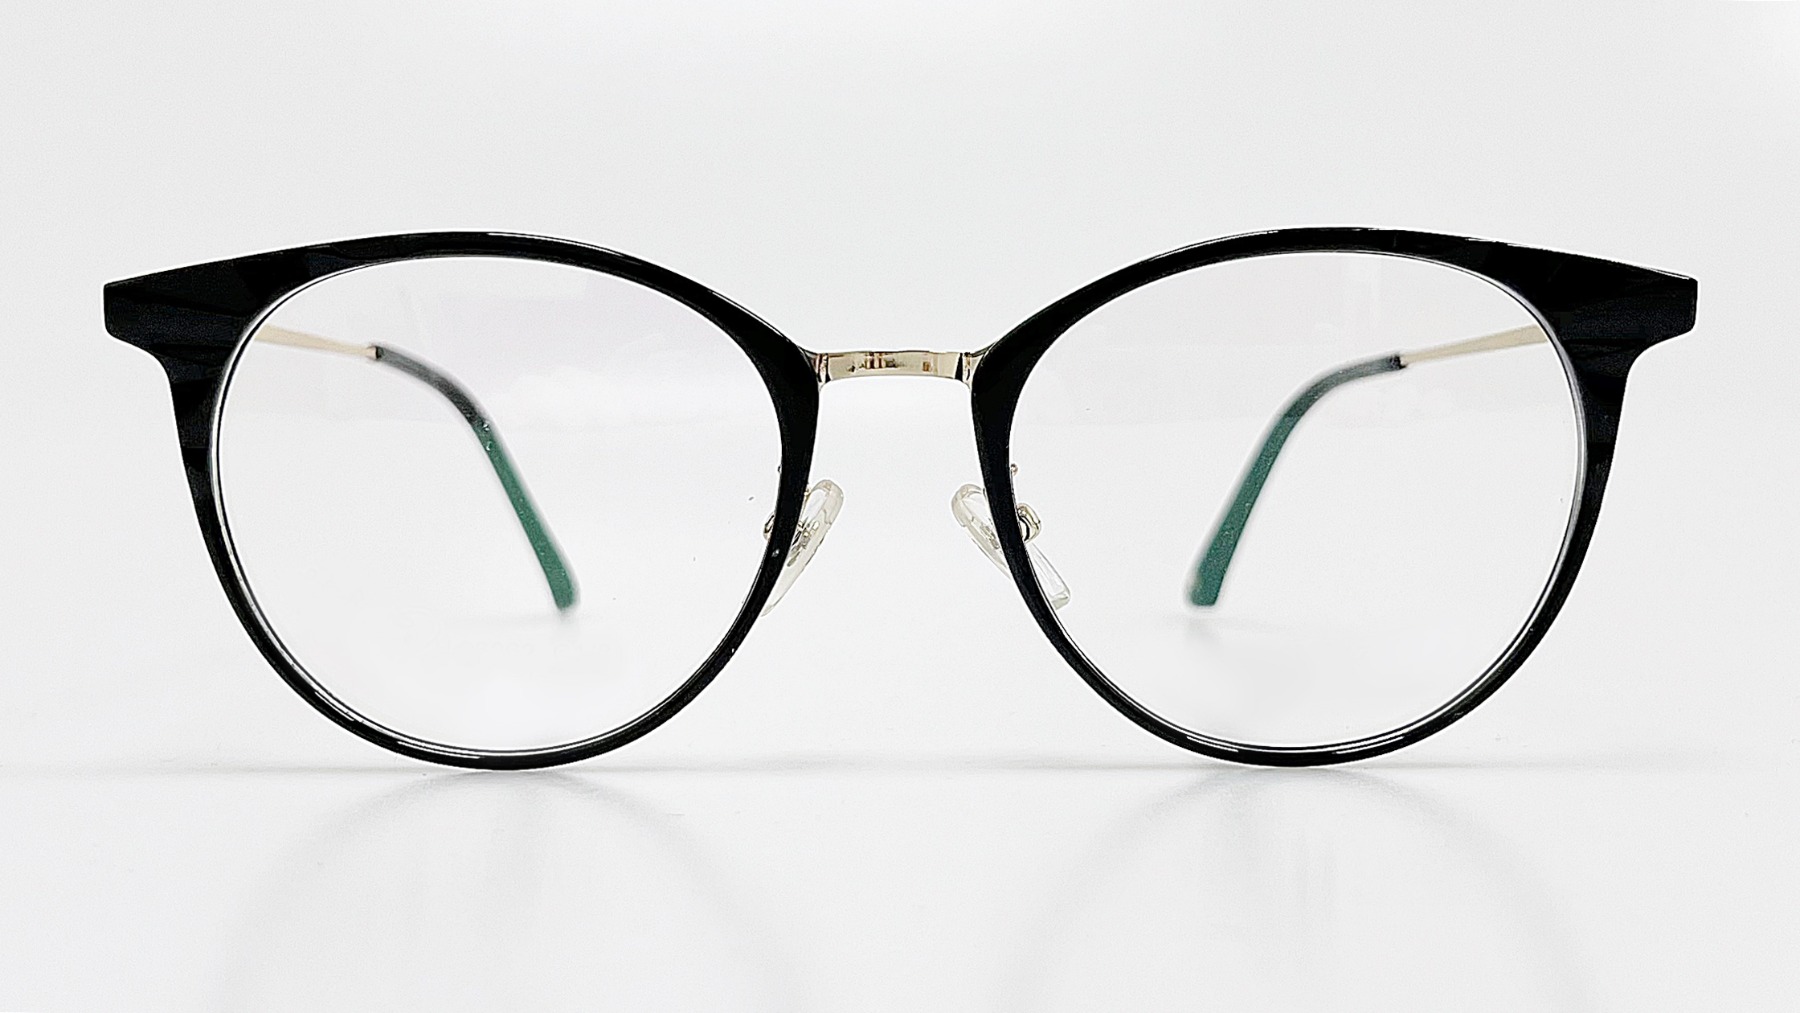 HELLEN KELLER-H26062, Korean glasses, sunglasses, eyeglasses, glasses